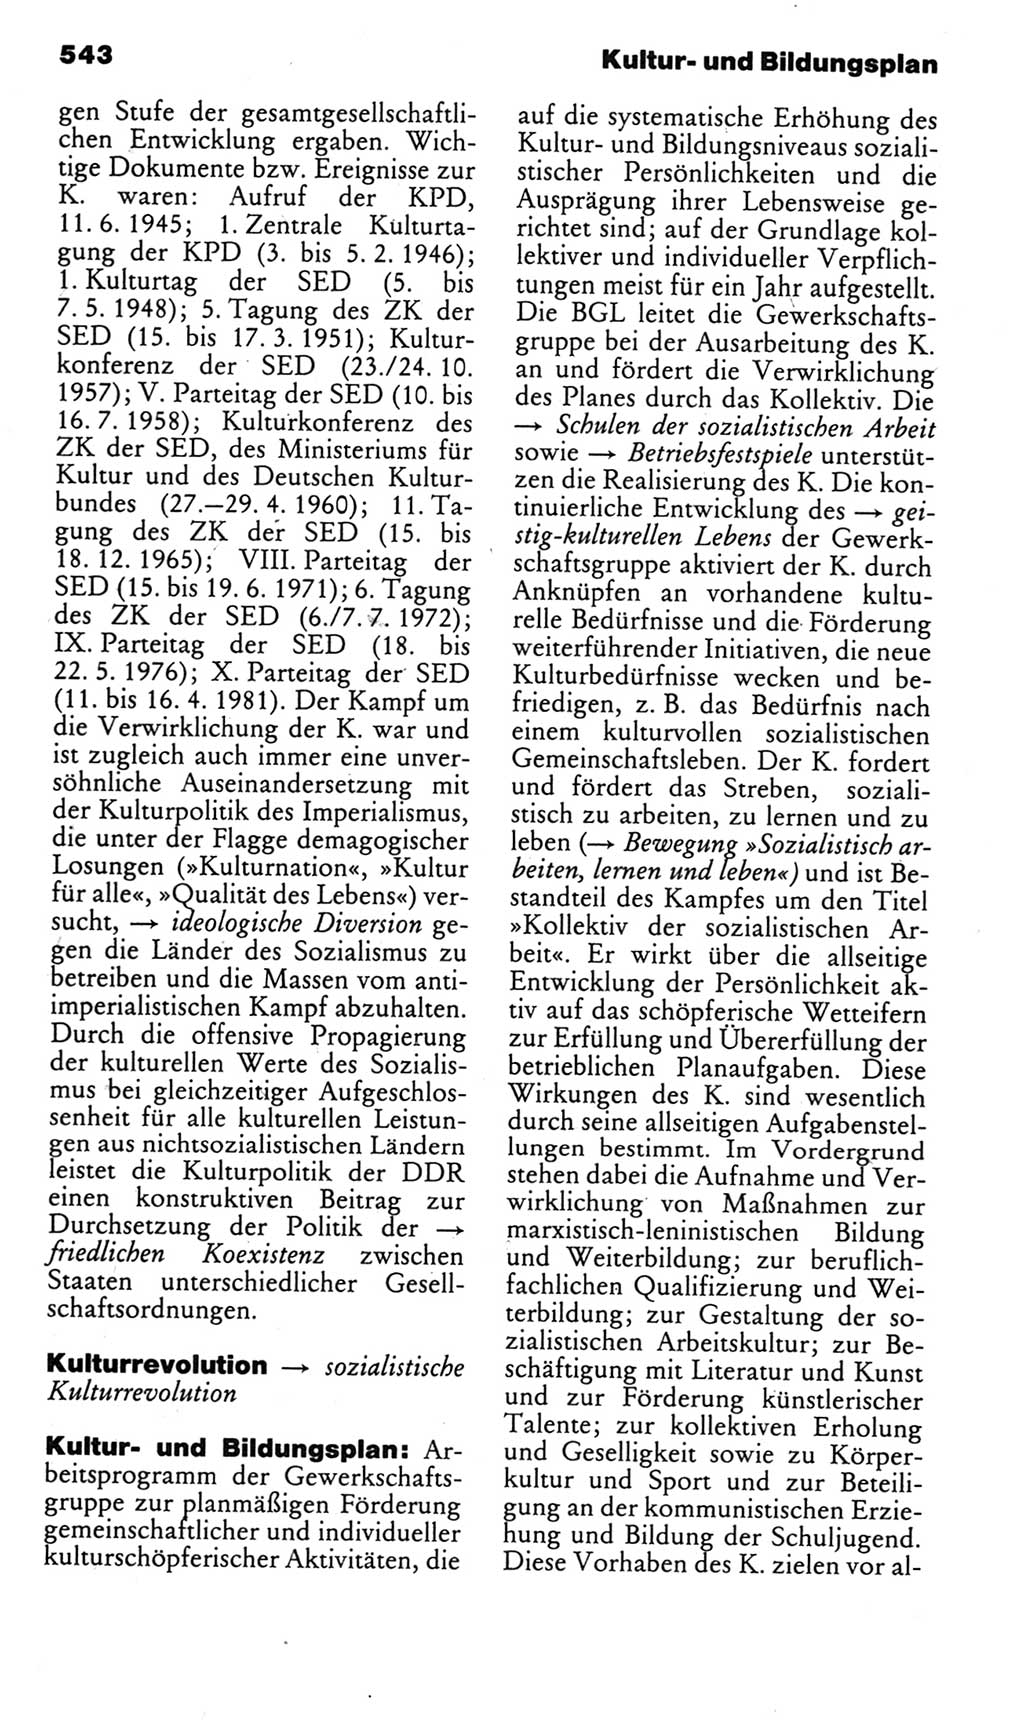 Kleines politisches Wörterbuch [Deutsche Demokratische Republik (DDR)] 1985, Seite 543 (Kl. pol. Wb. DDR 1985, S. 543)